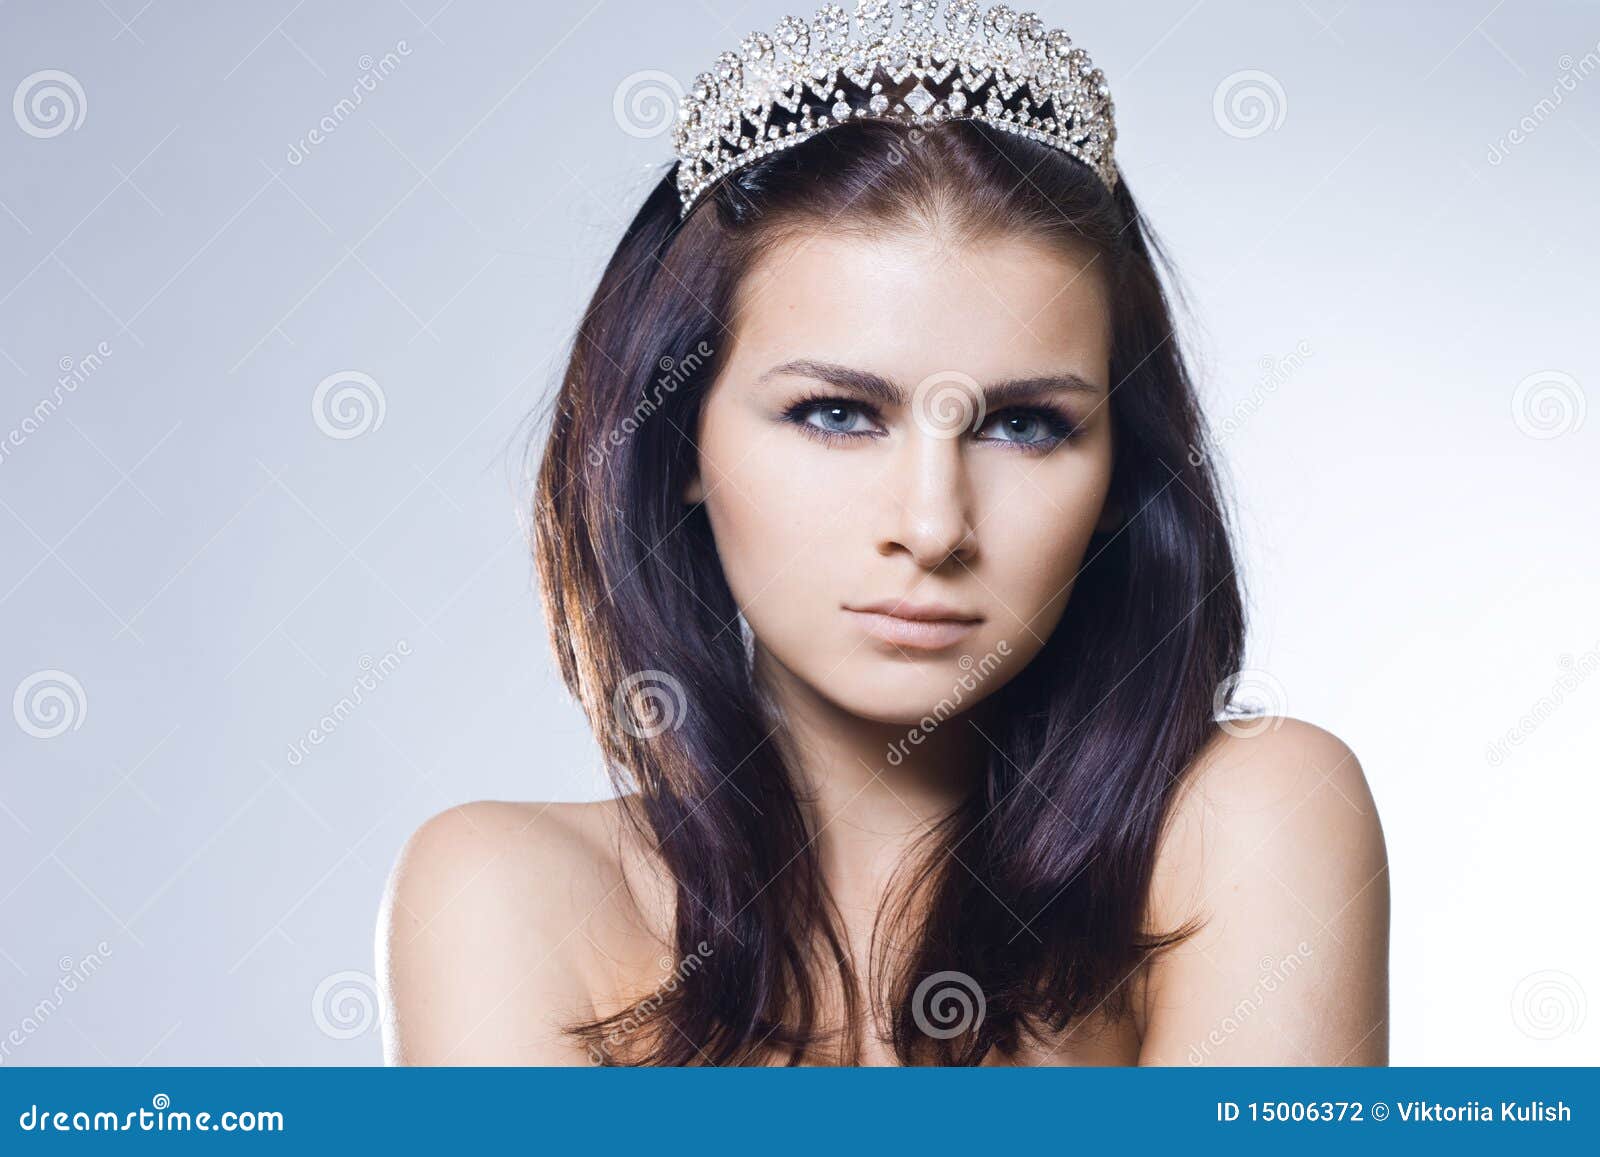 Princess with diamond crown - princess-diamond-crown-15006372